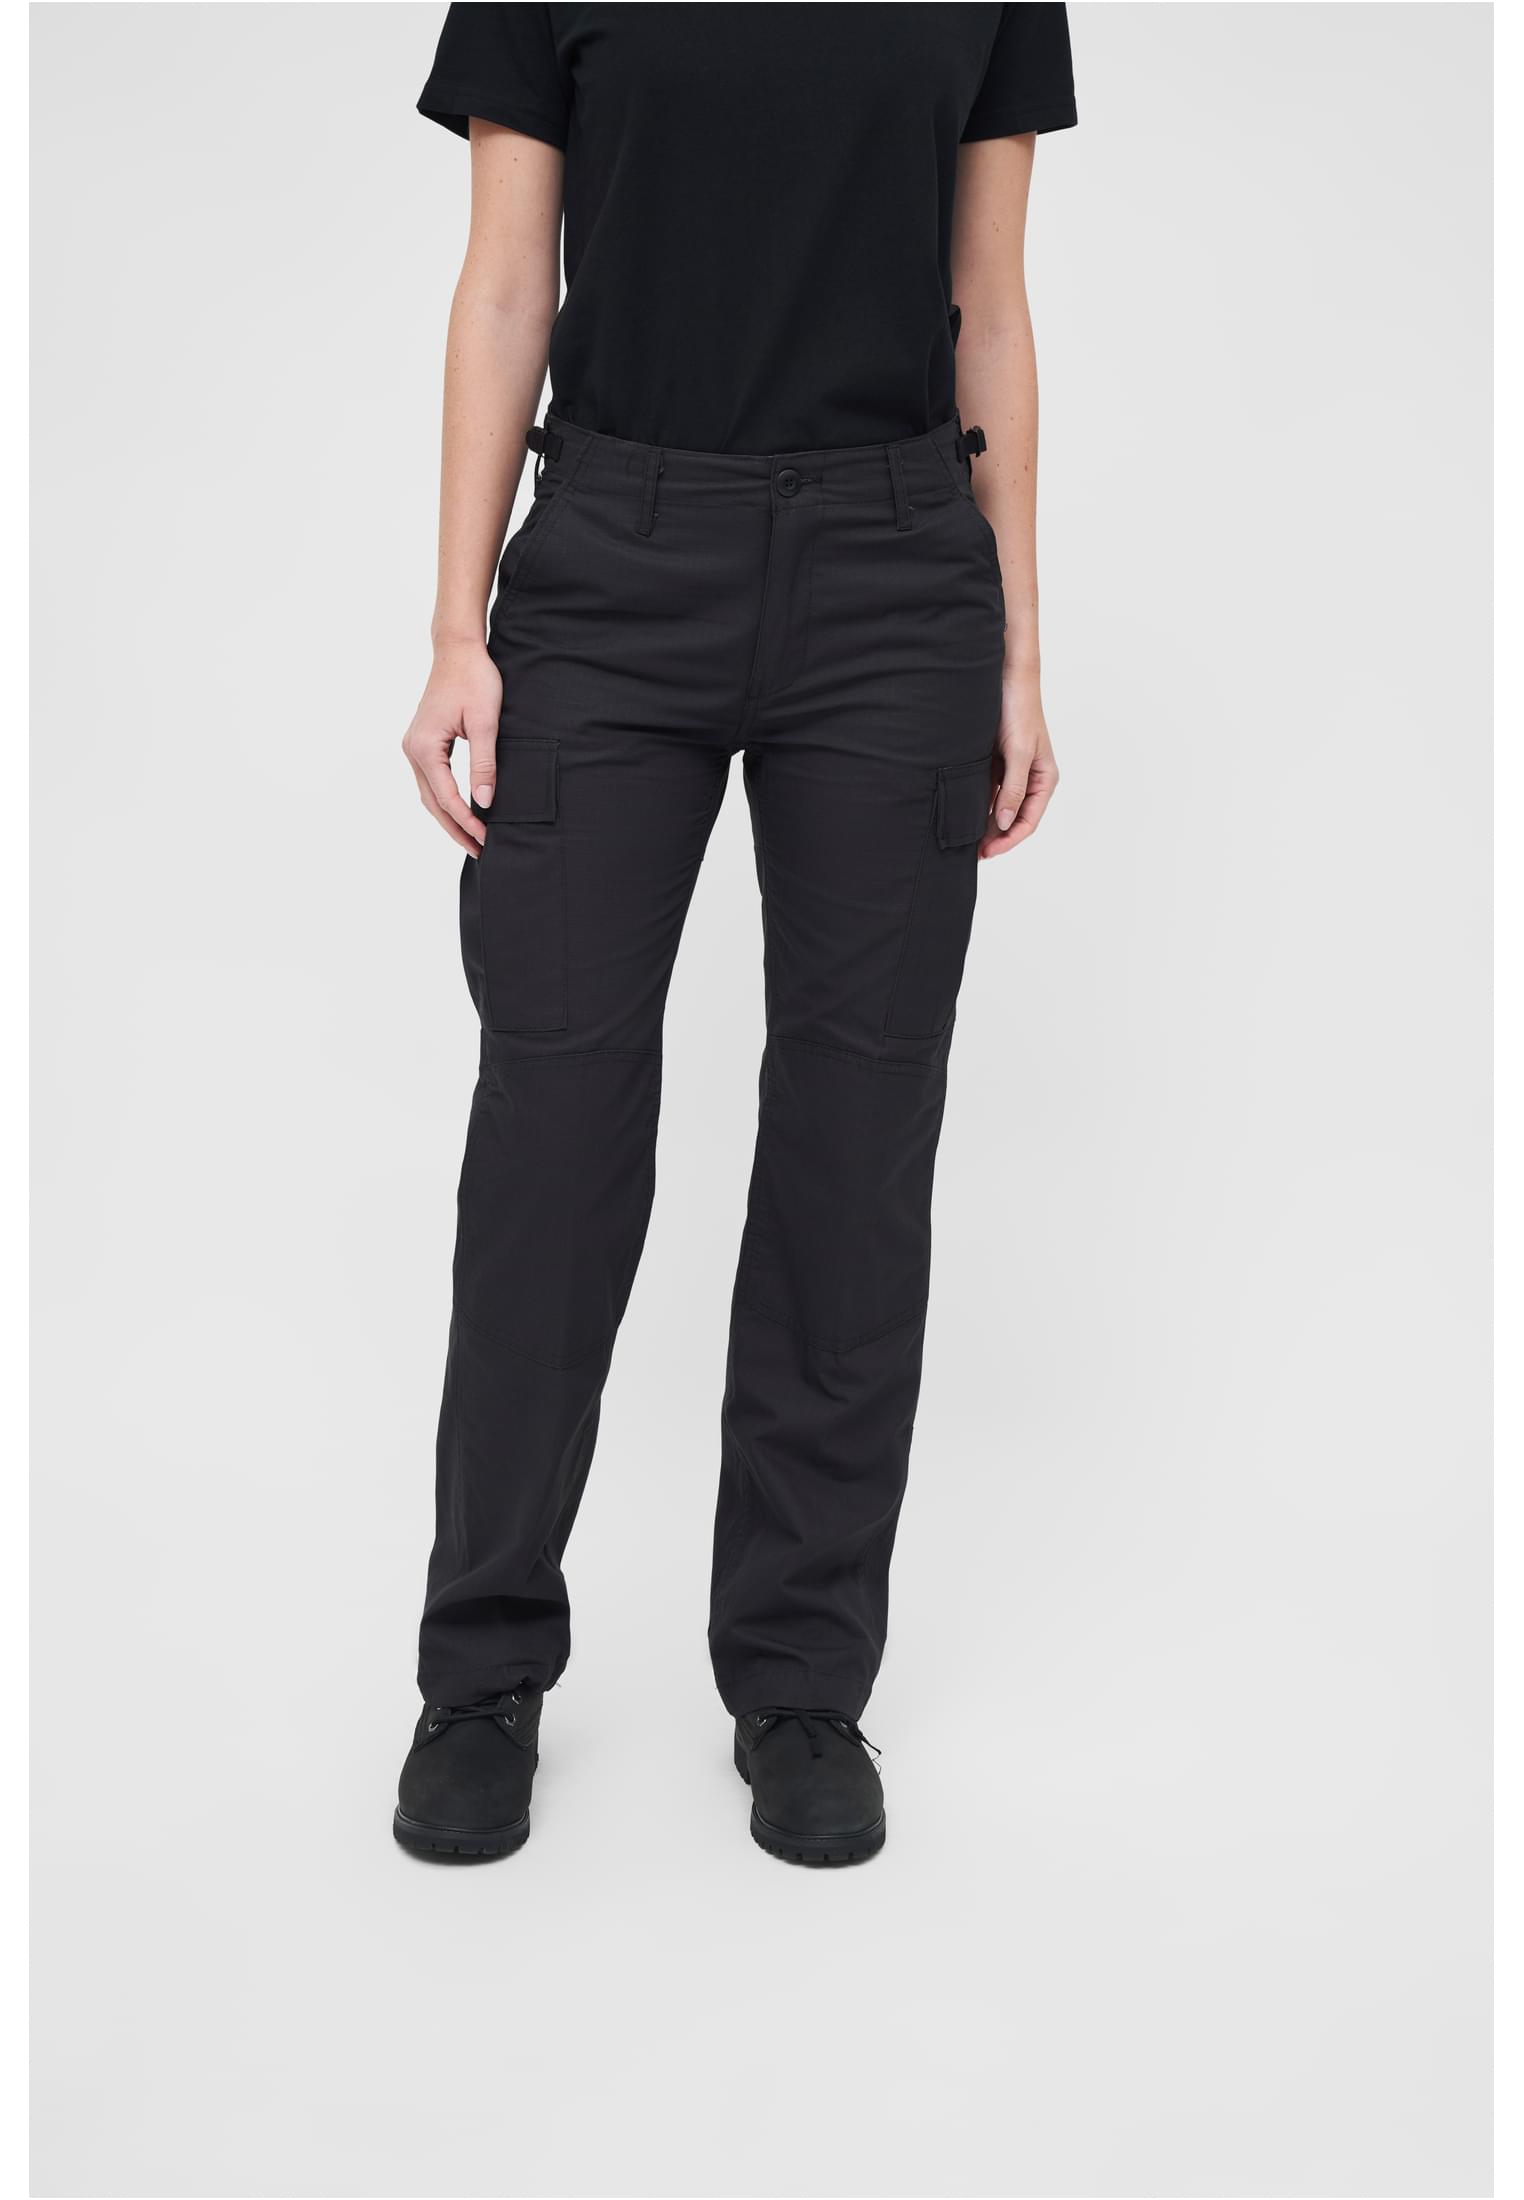 Women's BDU Ripstop Pants Black